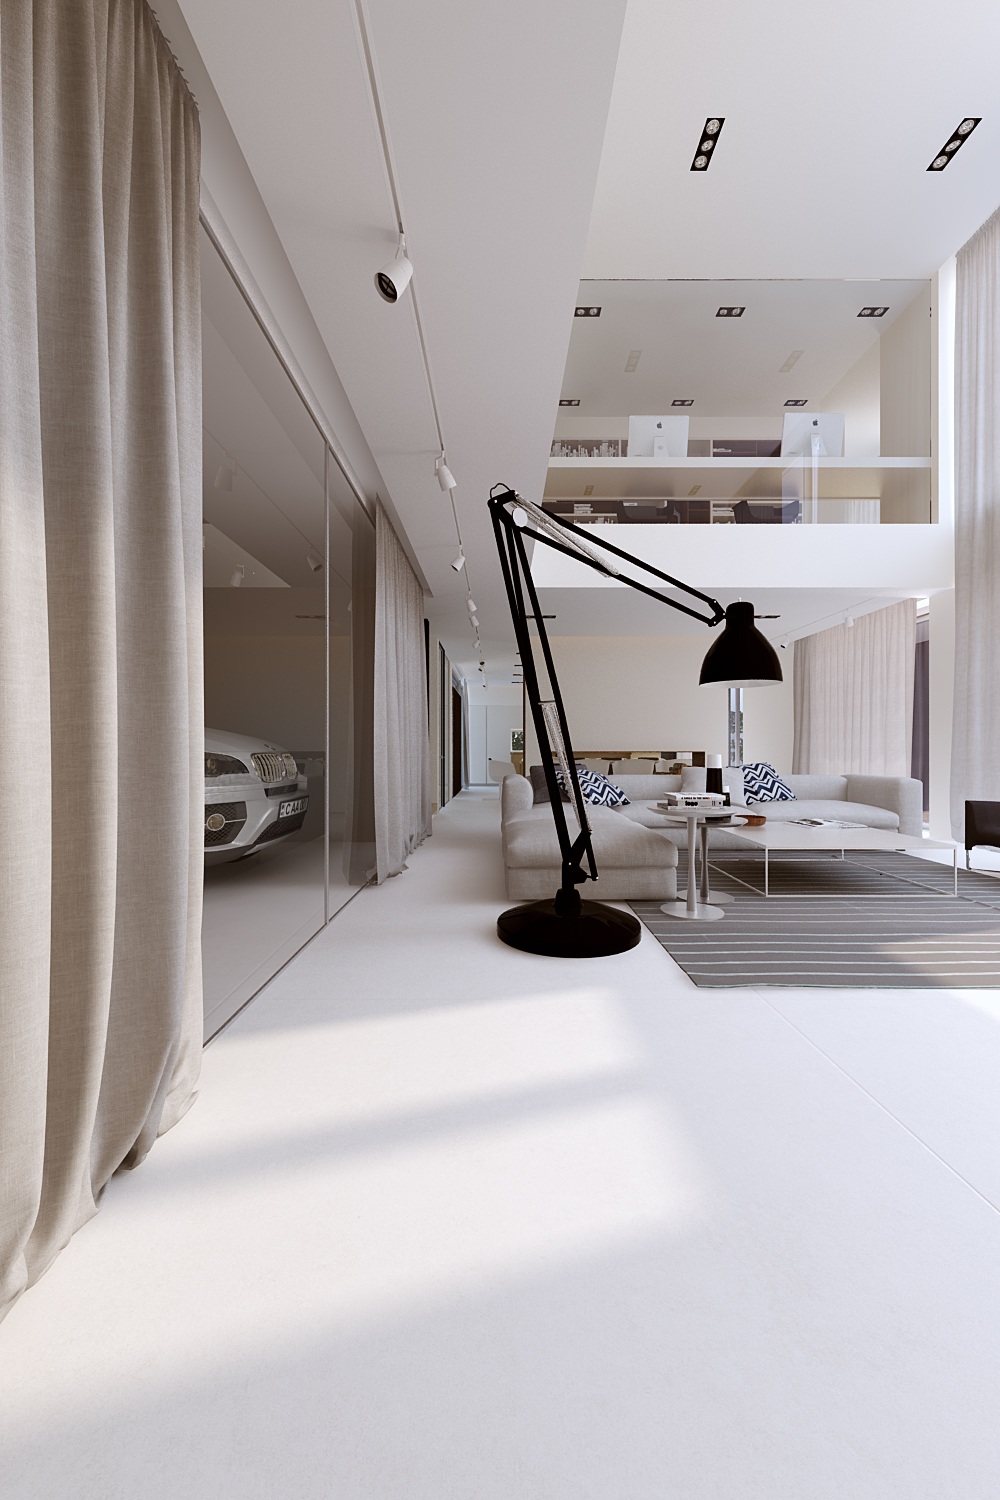 Wedo thiết kế nội thất phòng khách đẹp theo cảm hứng từ nhà để xe ô tô